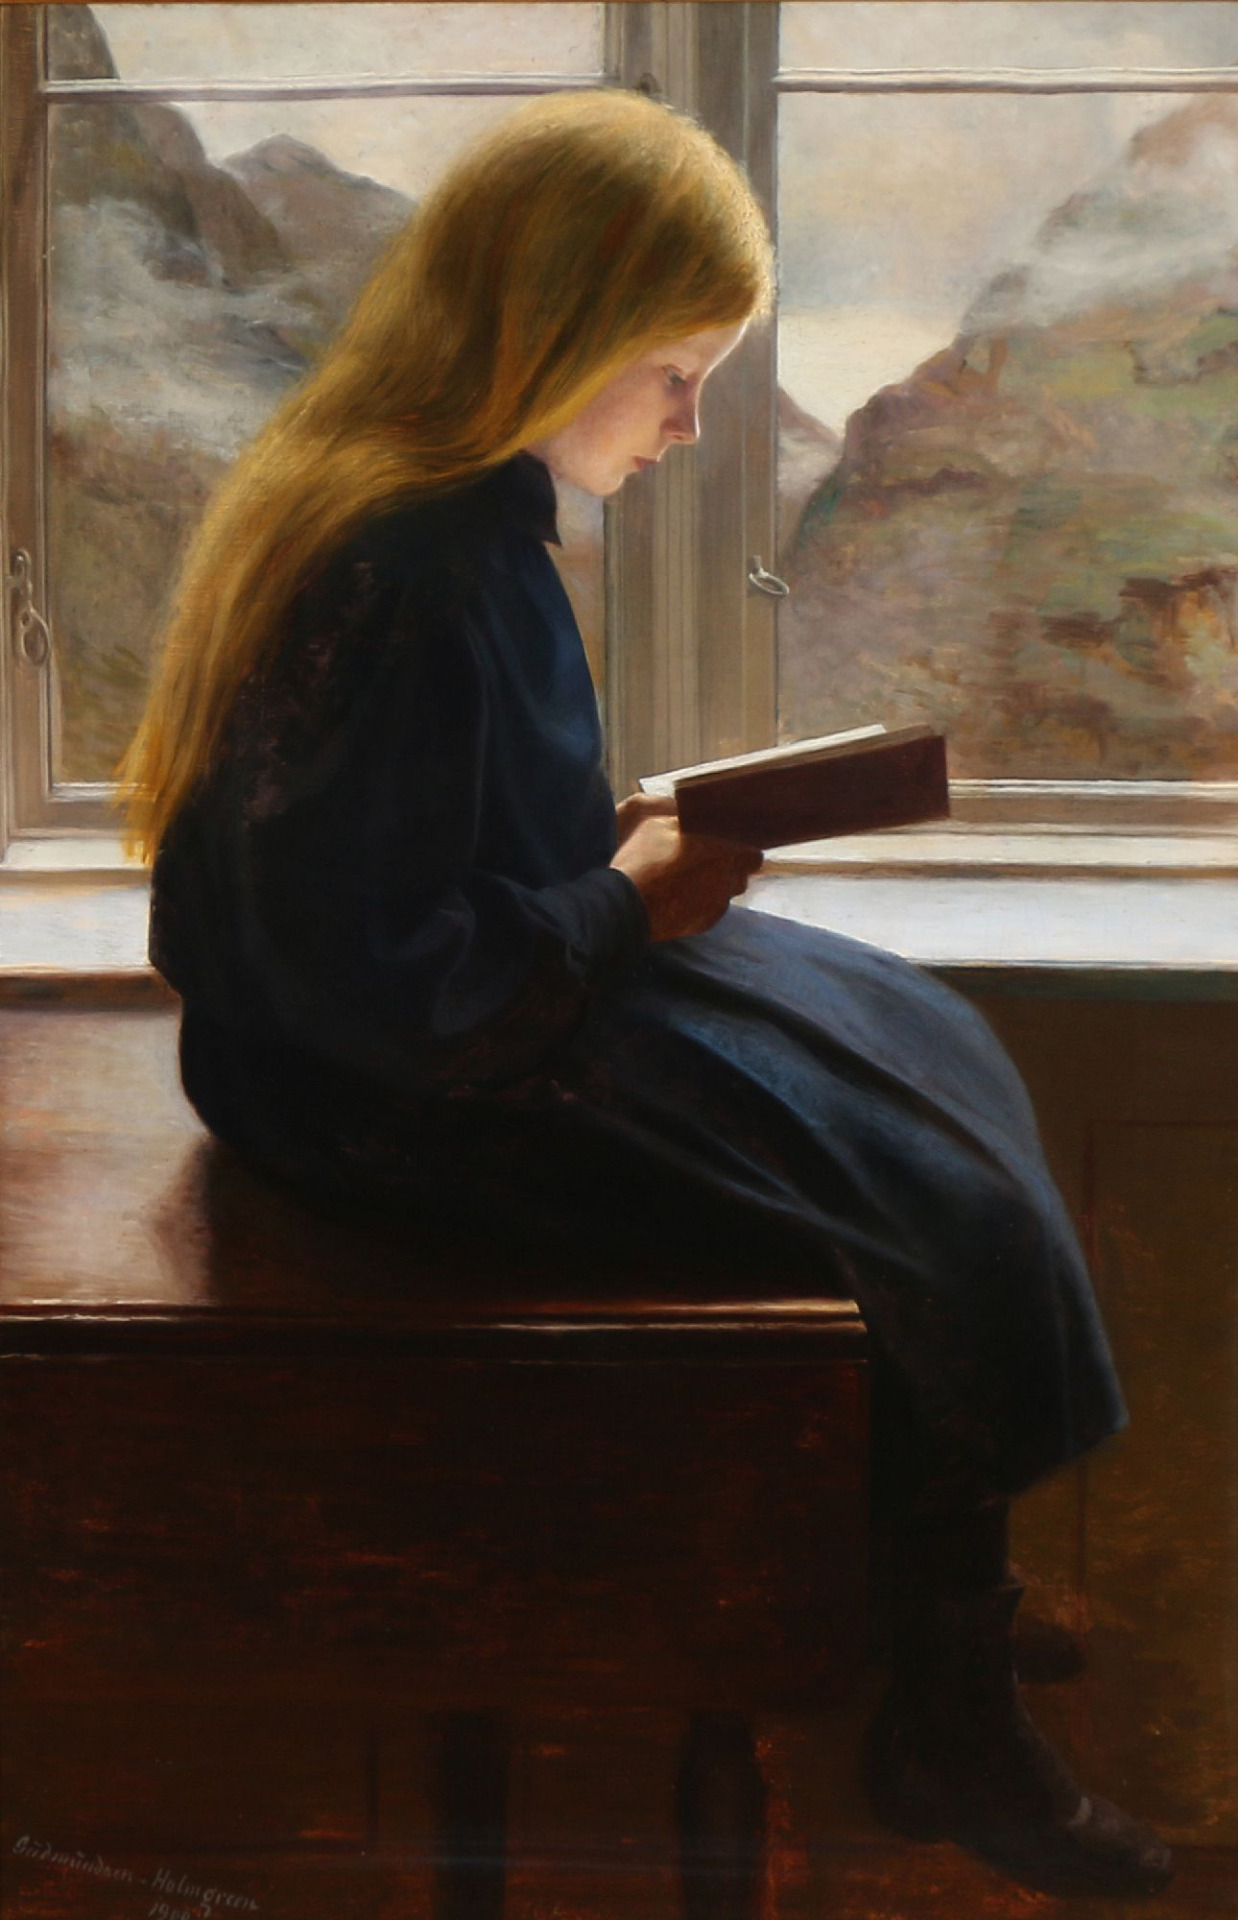 Фото Рыжеволосая девочка сидящая на столе у окна с видом на горный пейзажа читает книгу, by Johan Gudmundsen-Holmgreen